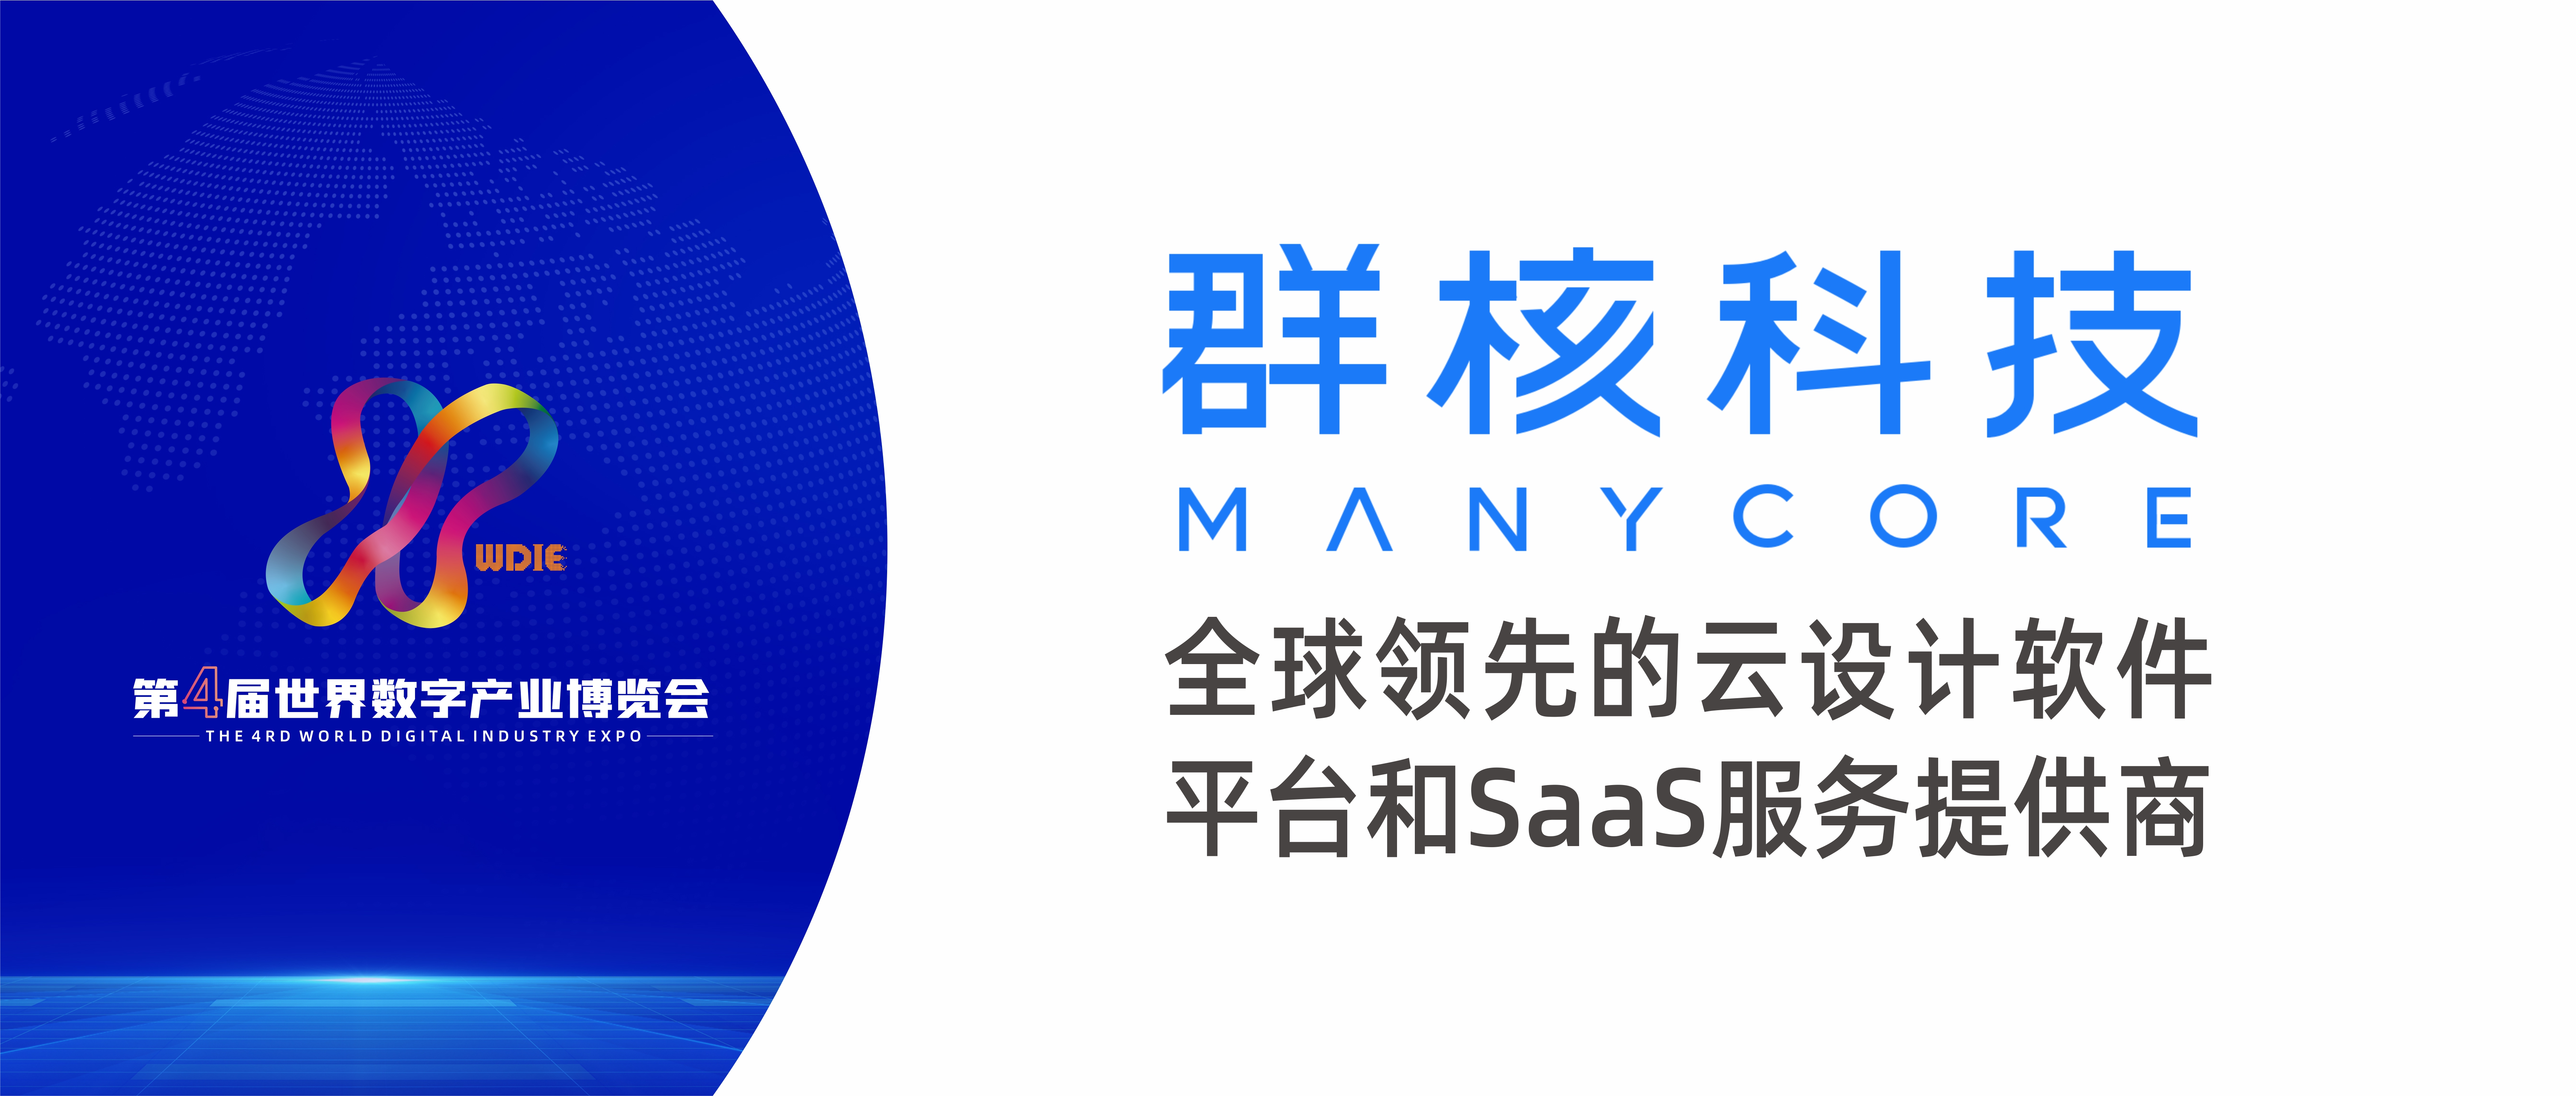 全球领先的云设计软件平台和SaaS服务提供商 | 杭州群核信息技术有限公司